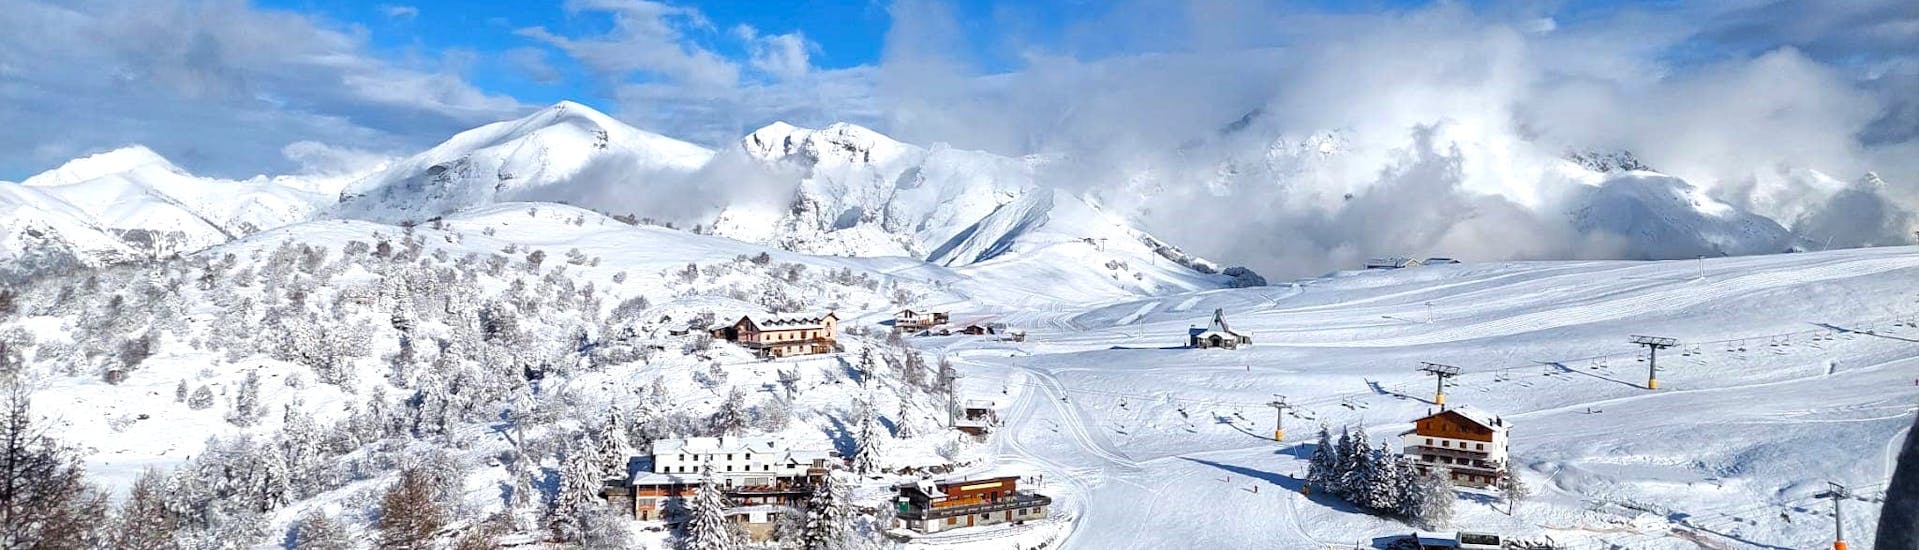 Privé skilessen voor volwassenen vanaf 15 jaar voor alle niveaus.